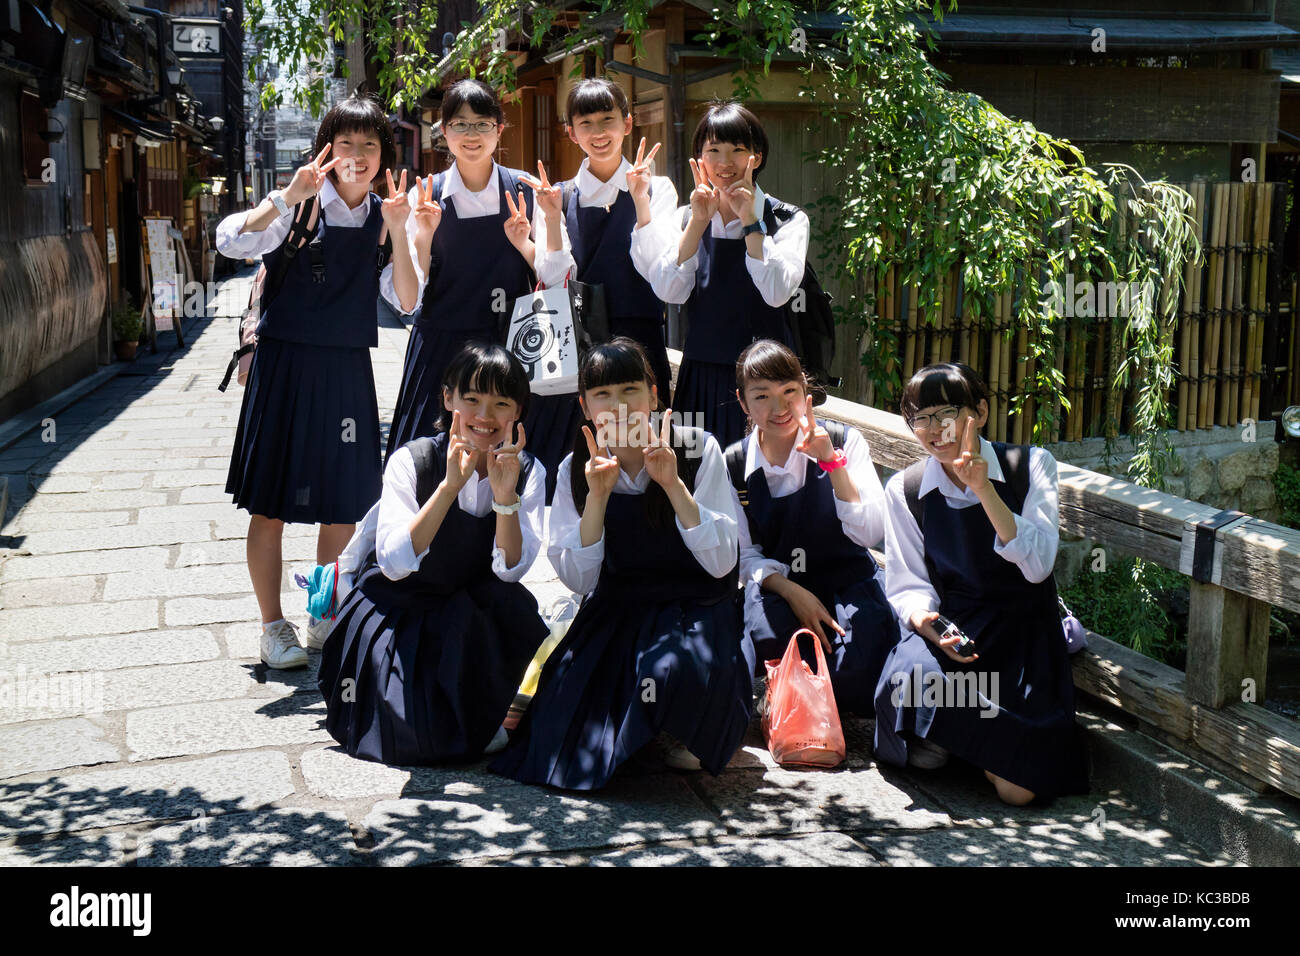 Kyoto, Giappone - 18 maggio 2017: un gruppo di alunni nella scuola uniforme su un viaggio a Kyoto sono in posa per una foto Foto Stock